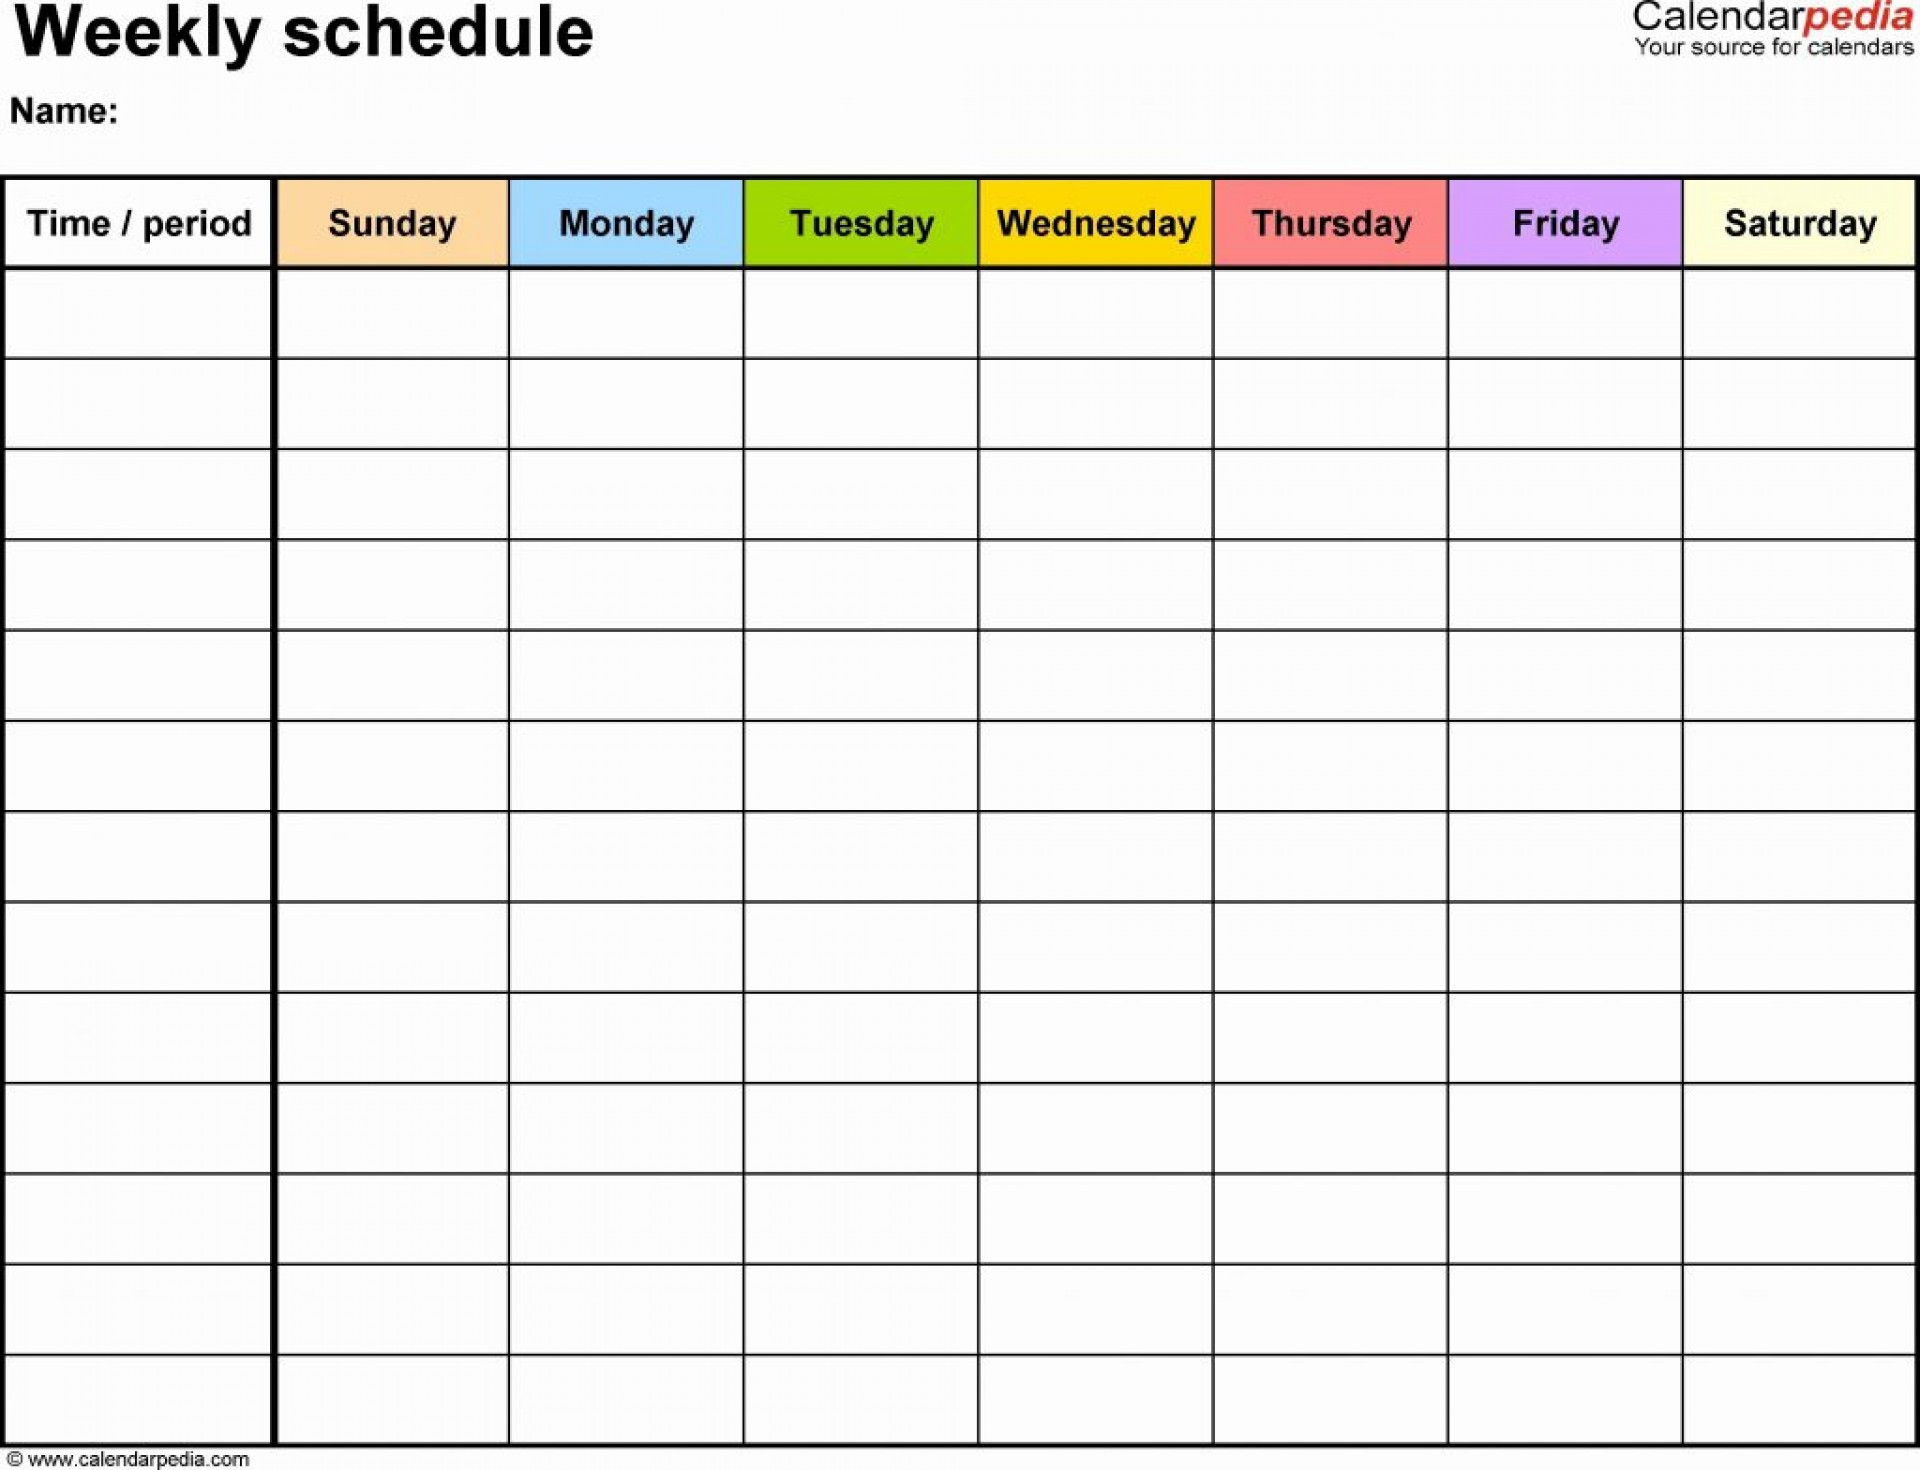 Calendar Template Google Docs Spreadsheet Regarding 005 Template Ideas Calendar Google Docs ~ Ulyssesroom